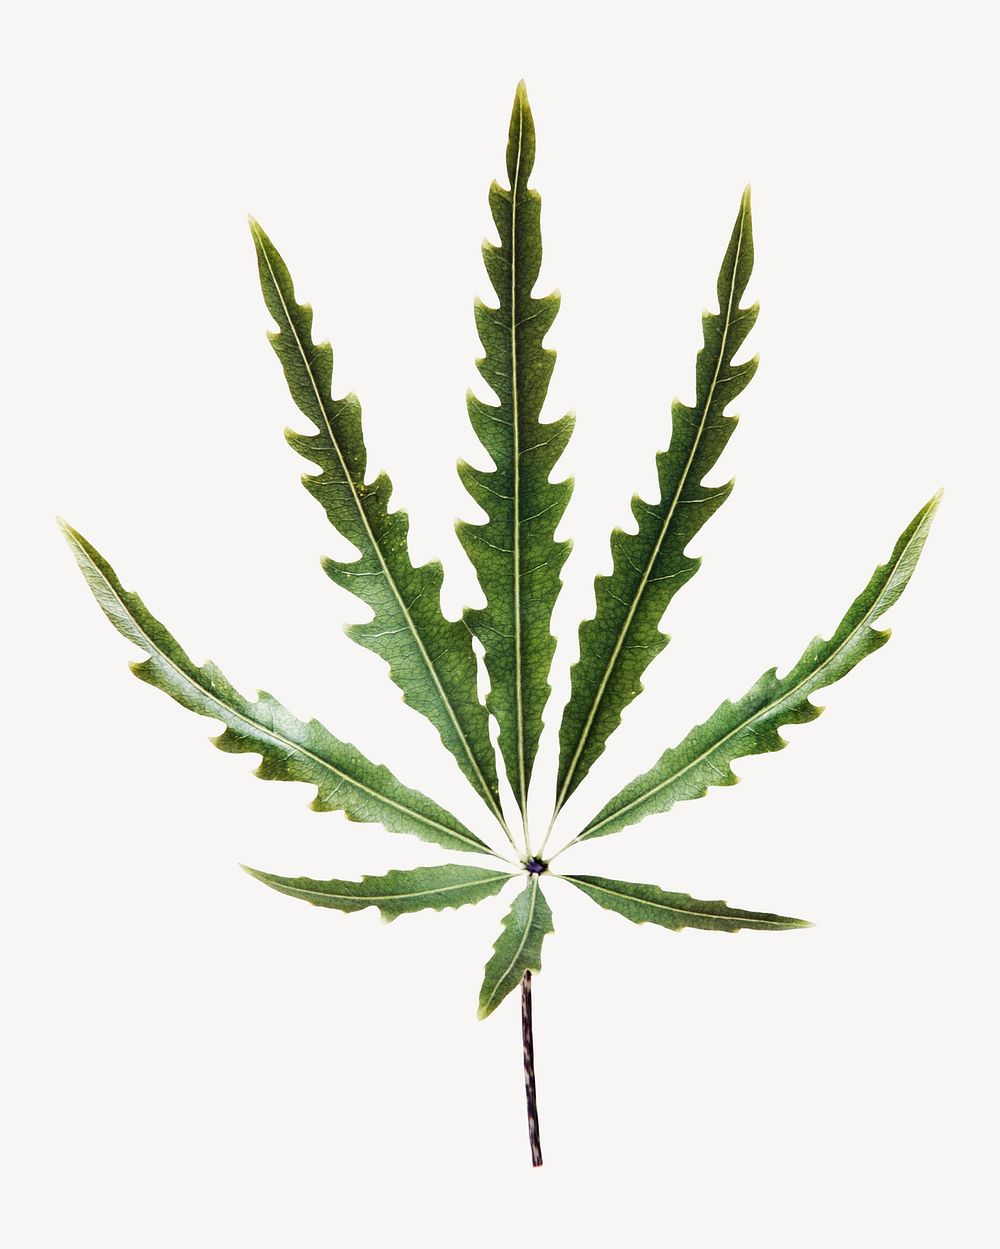 Marijuana leaf, plant, isolated botanical image